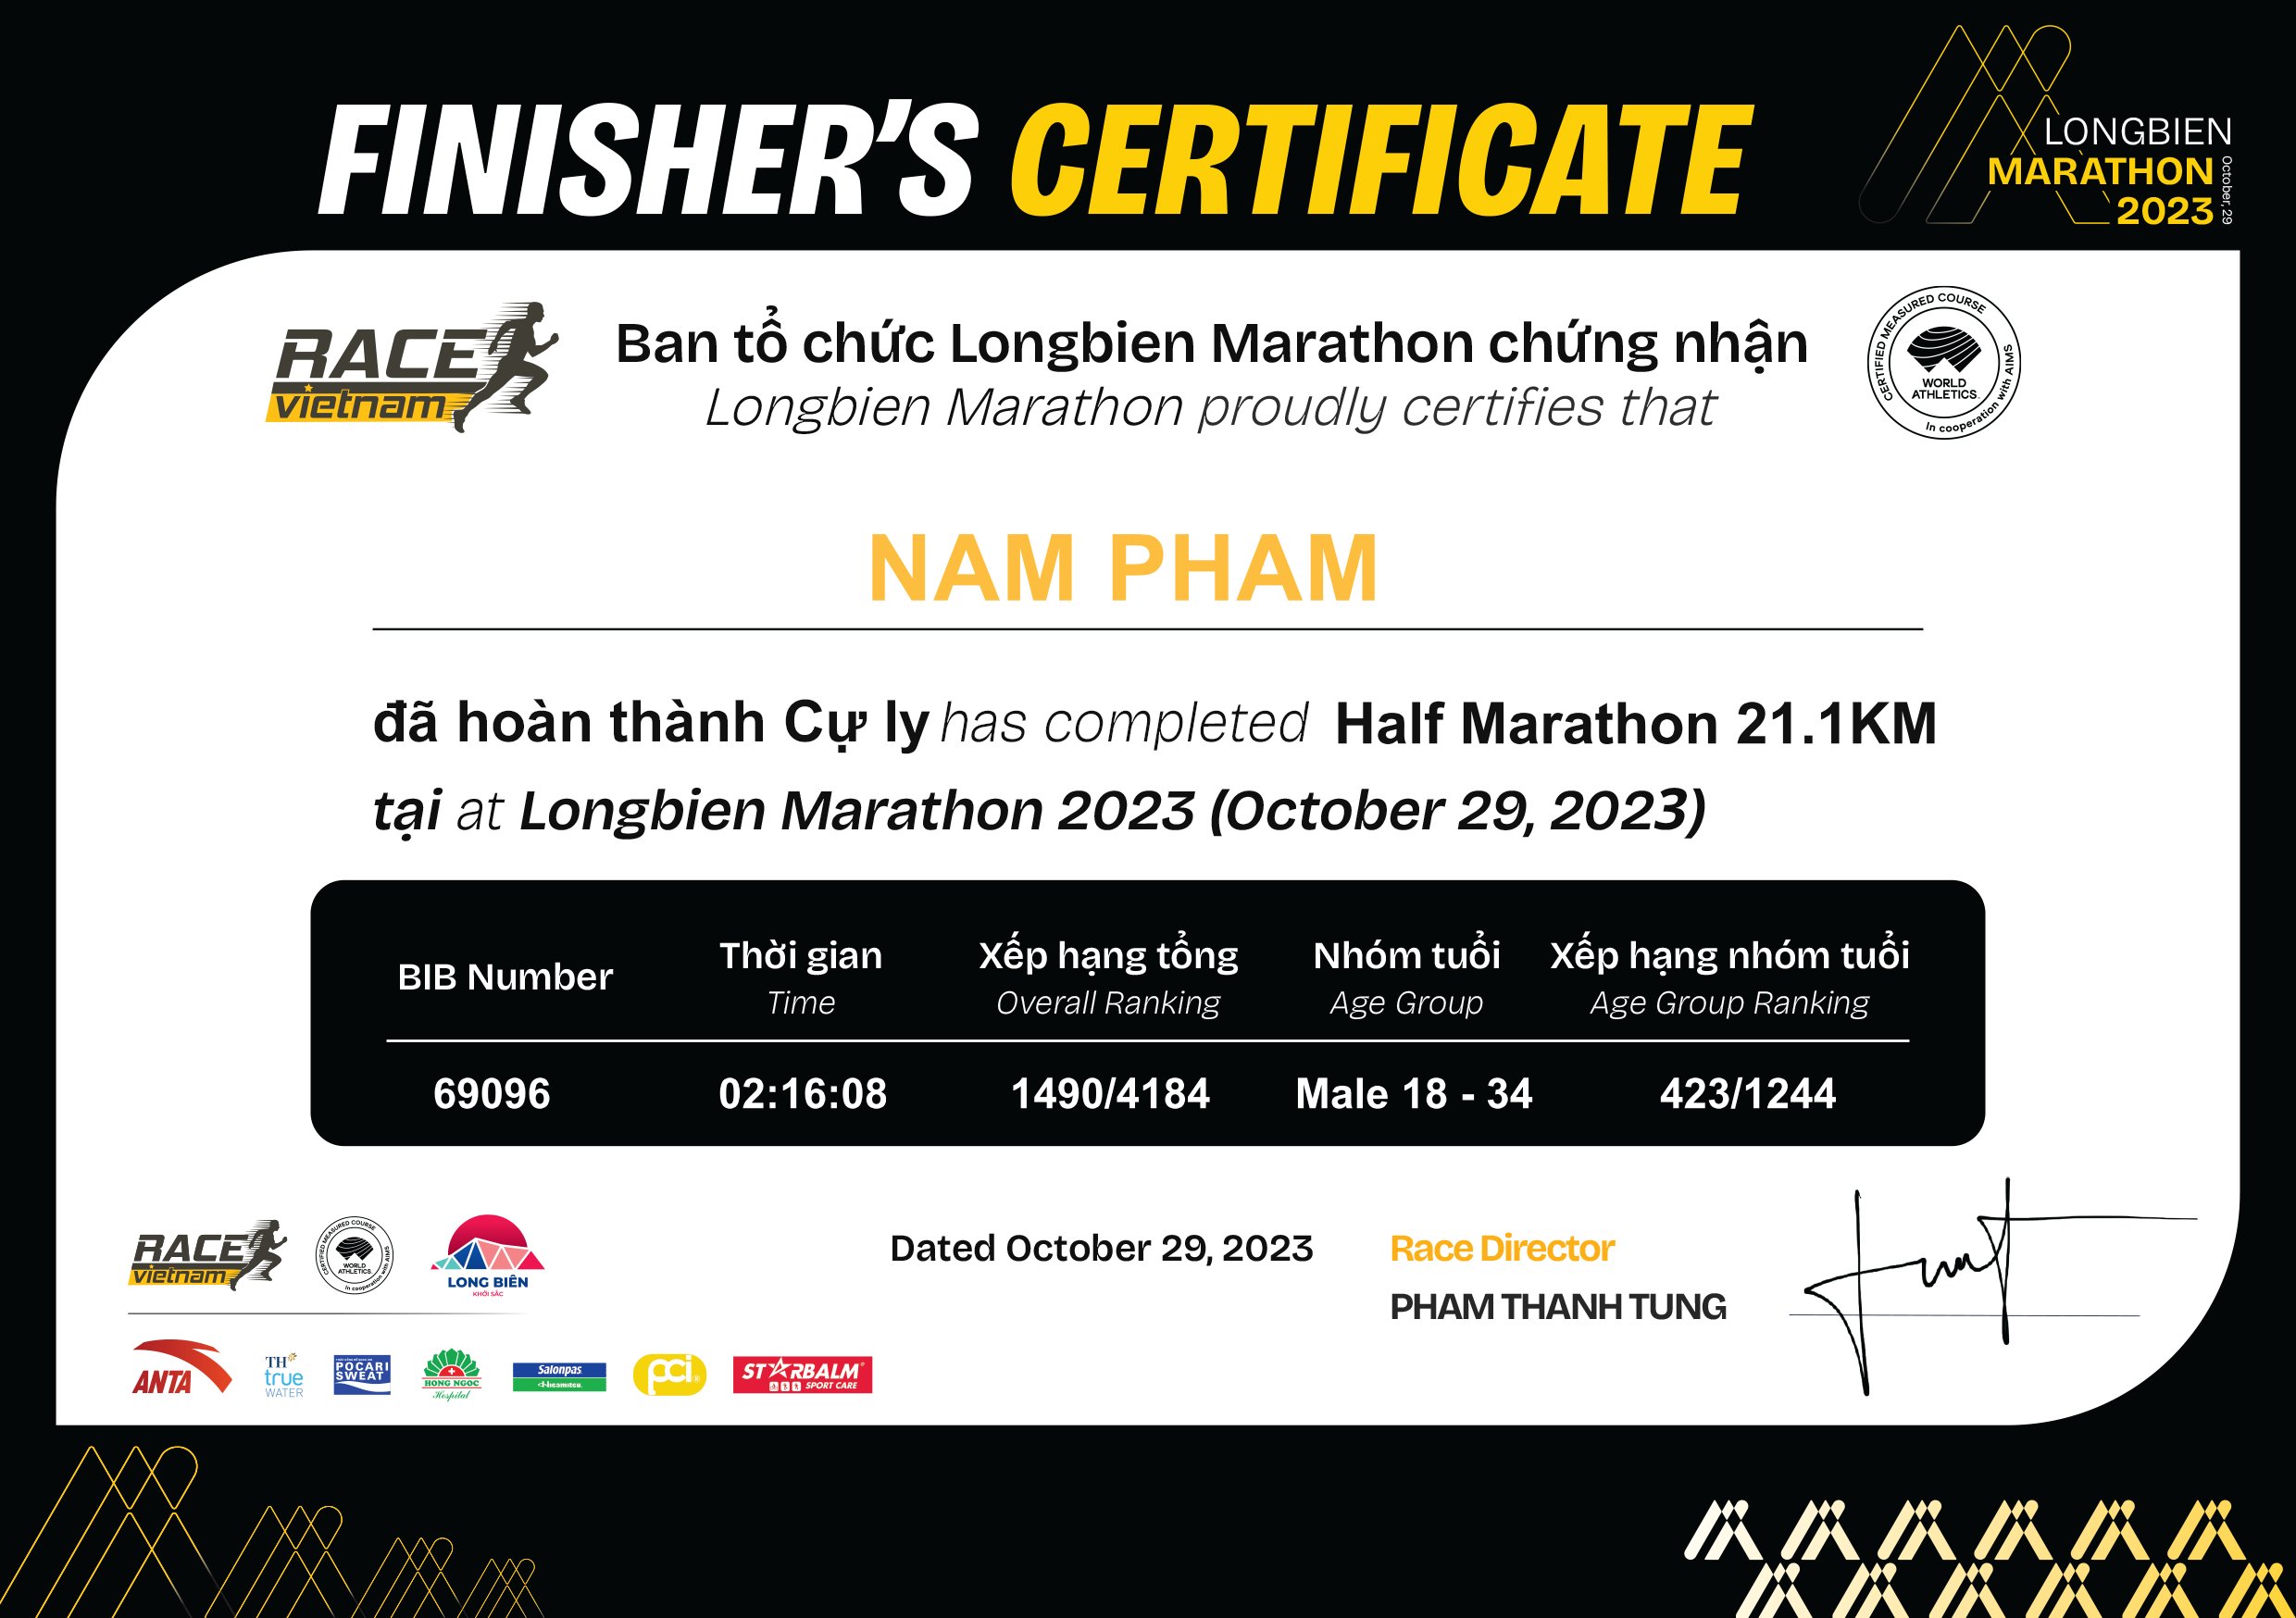 69096 - Nam Pham